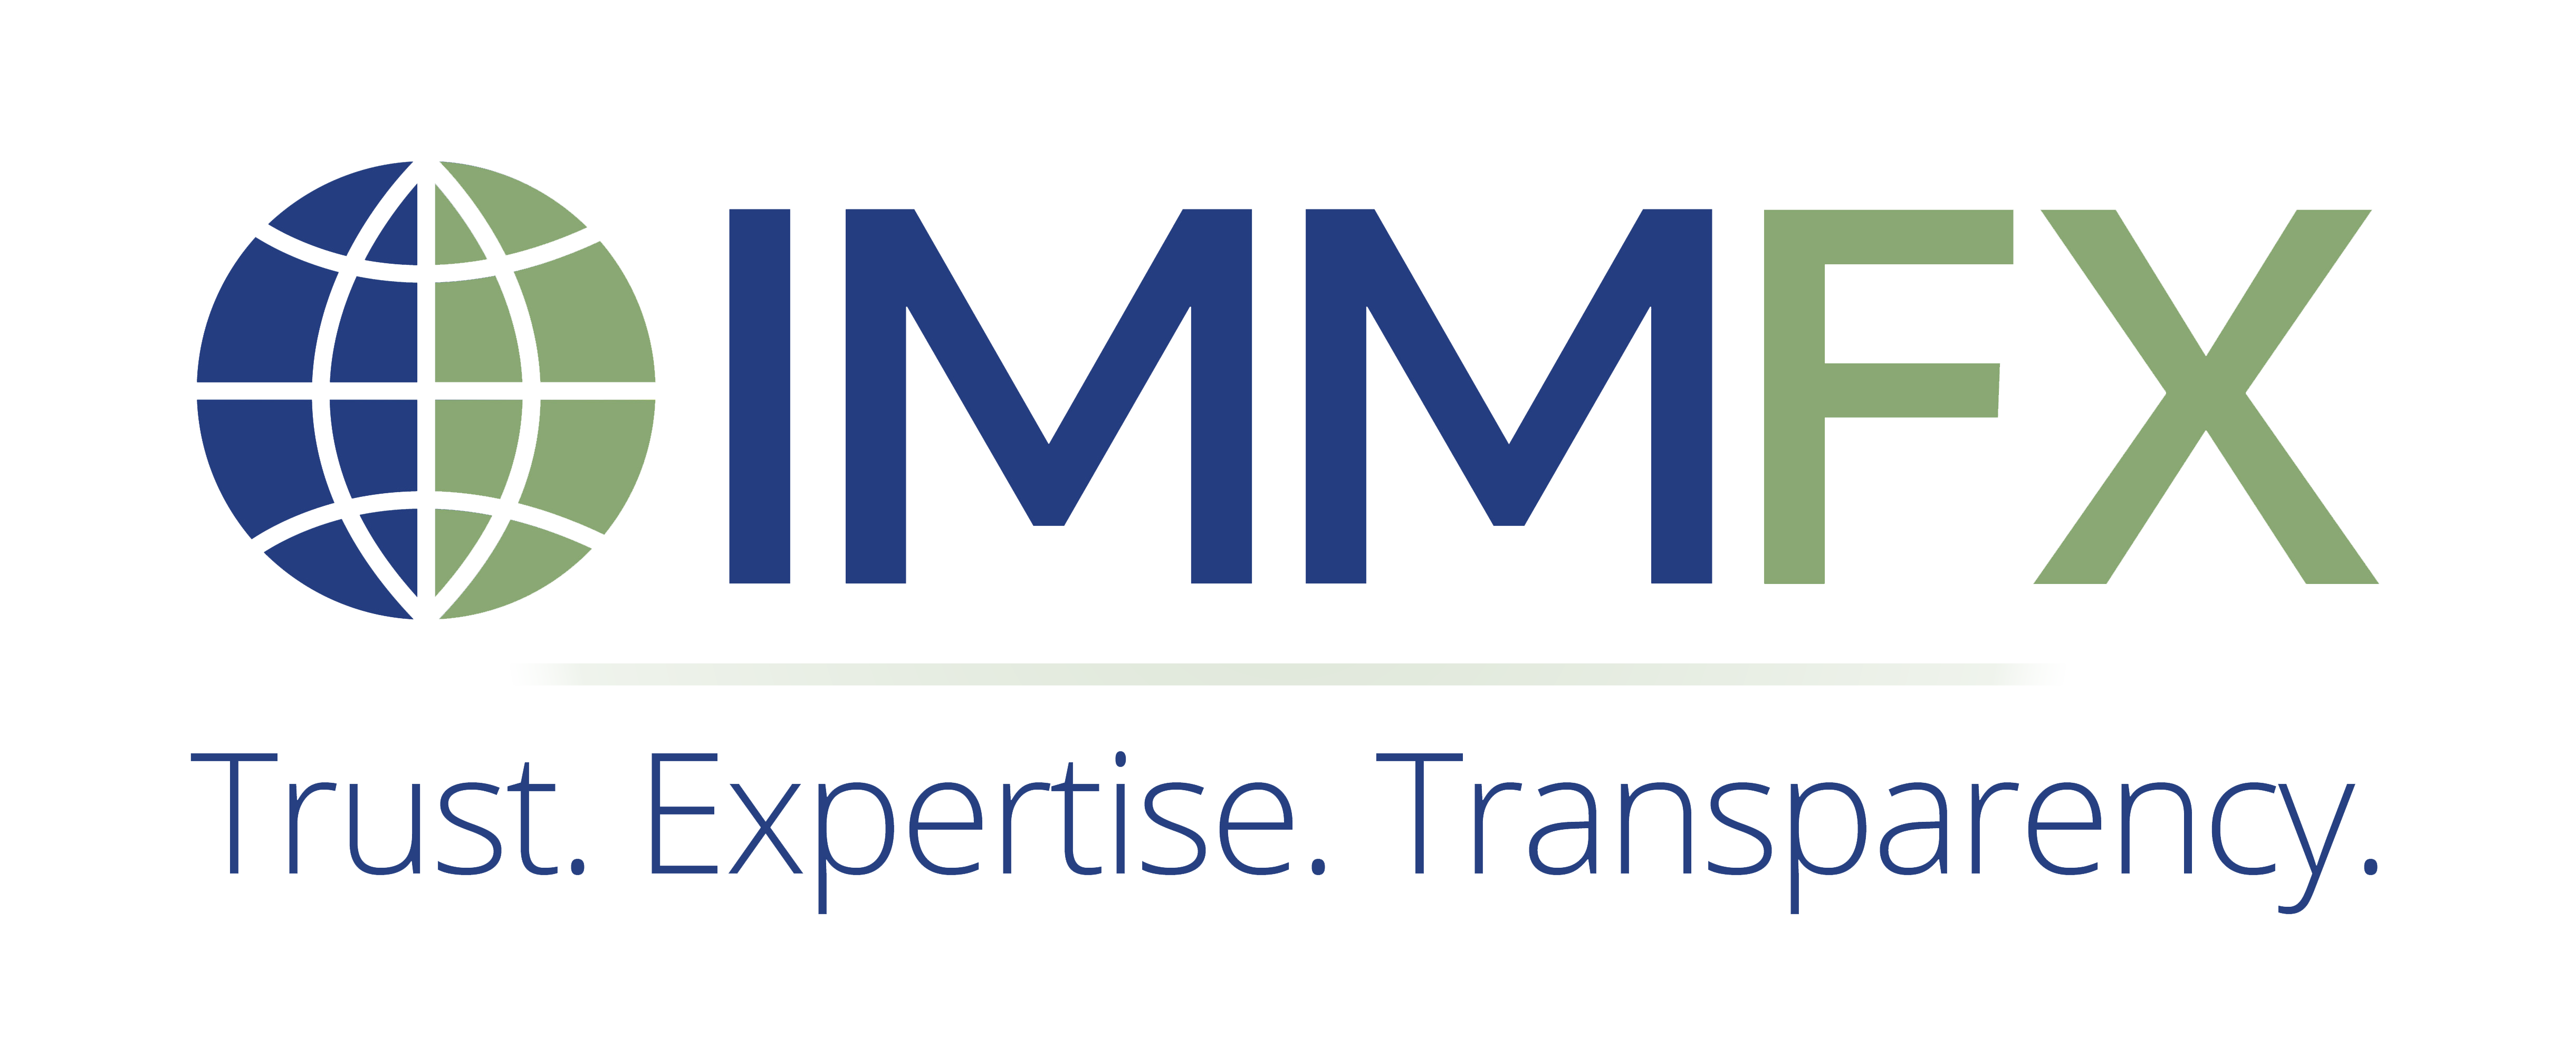 IMMFX_logo_large